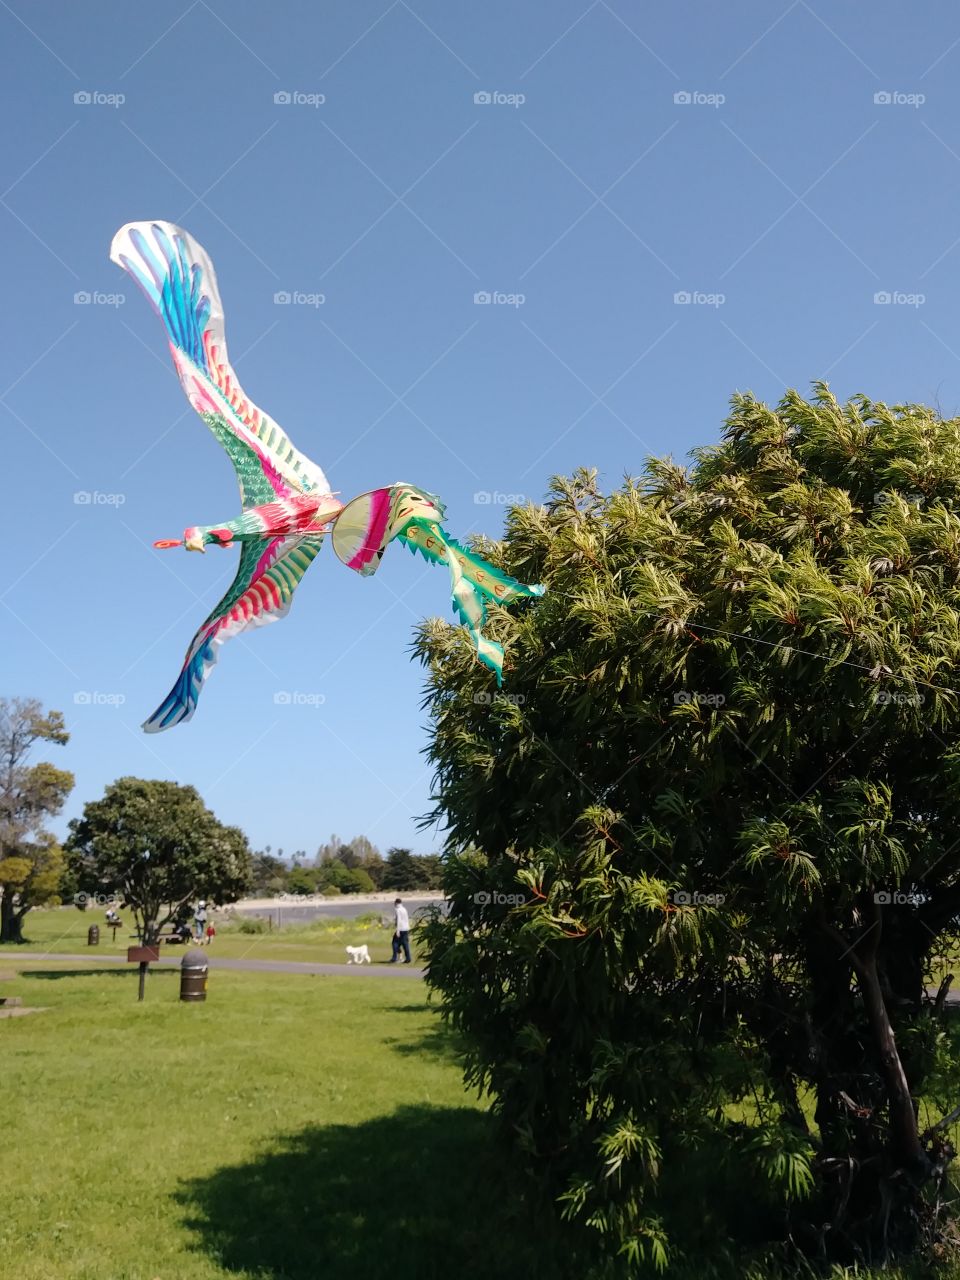 peacock kite